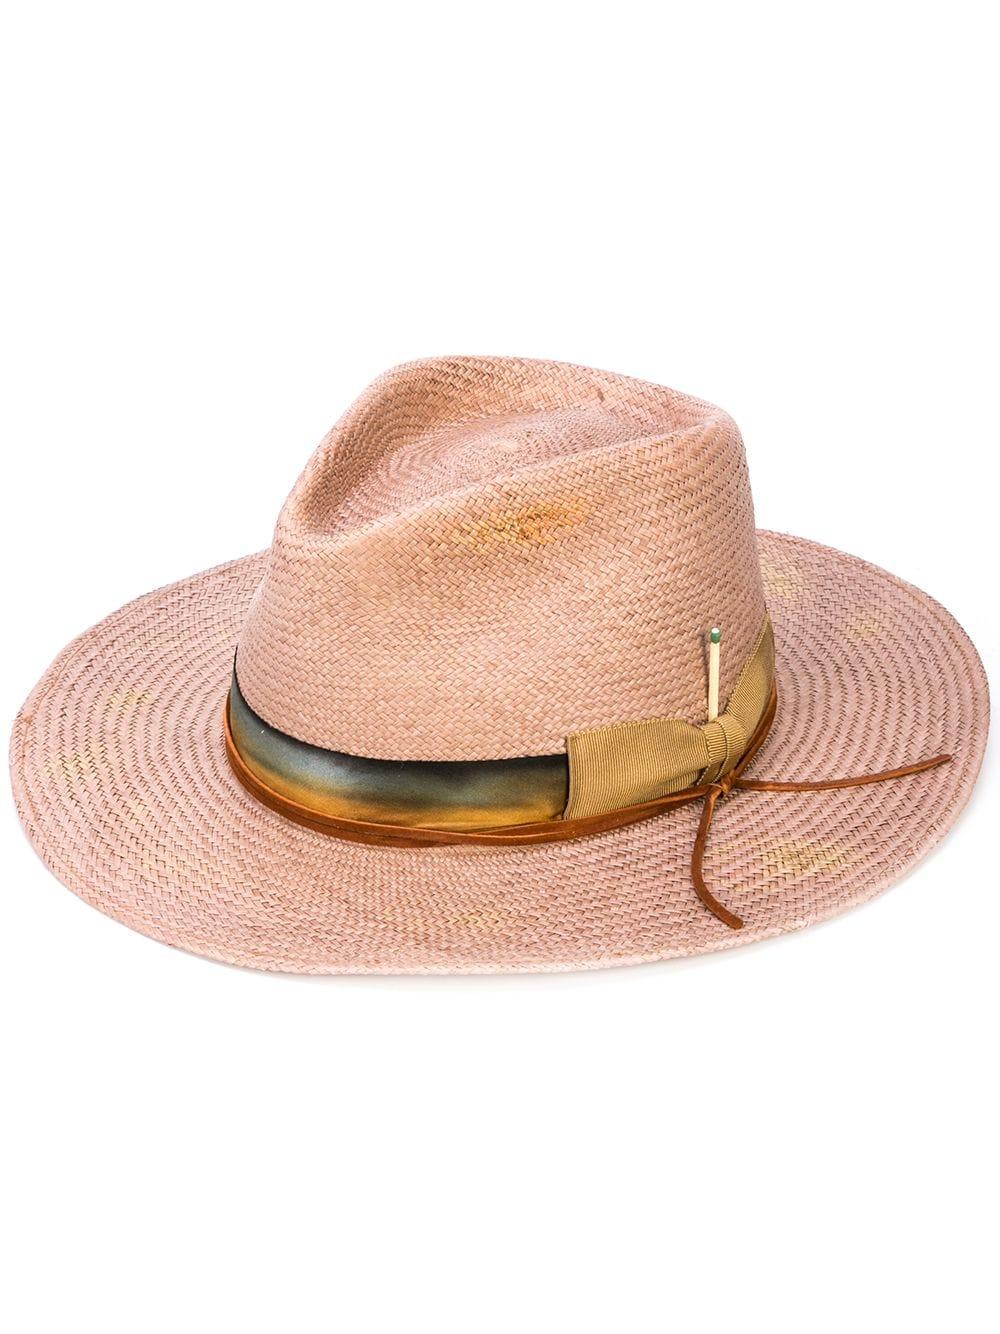 Nick Fouquet Tamarind Hat for Men - Lyst